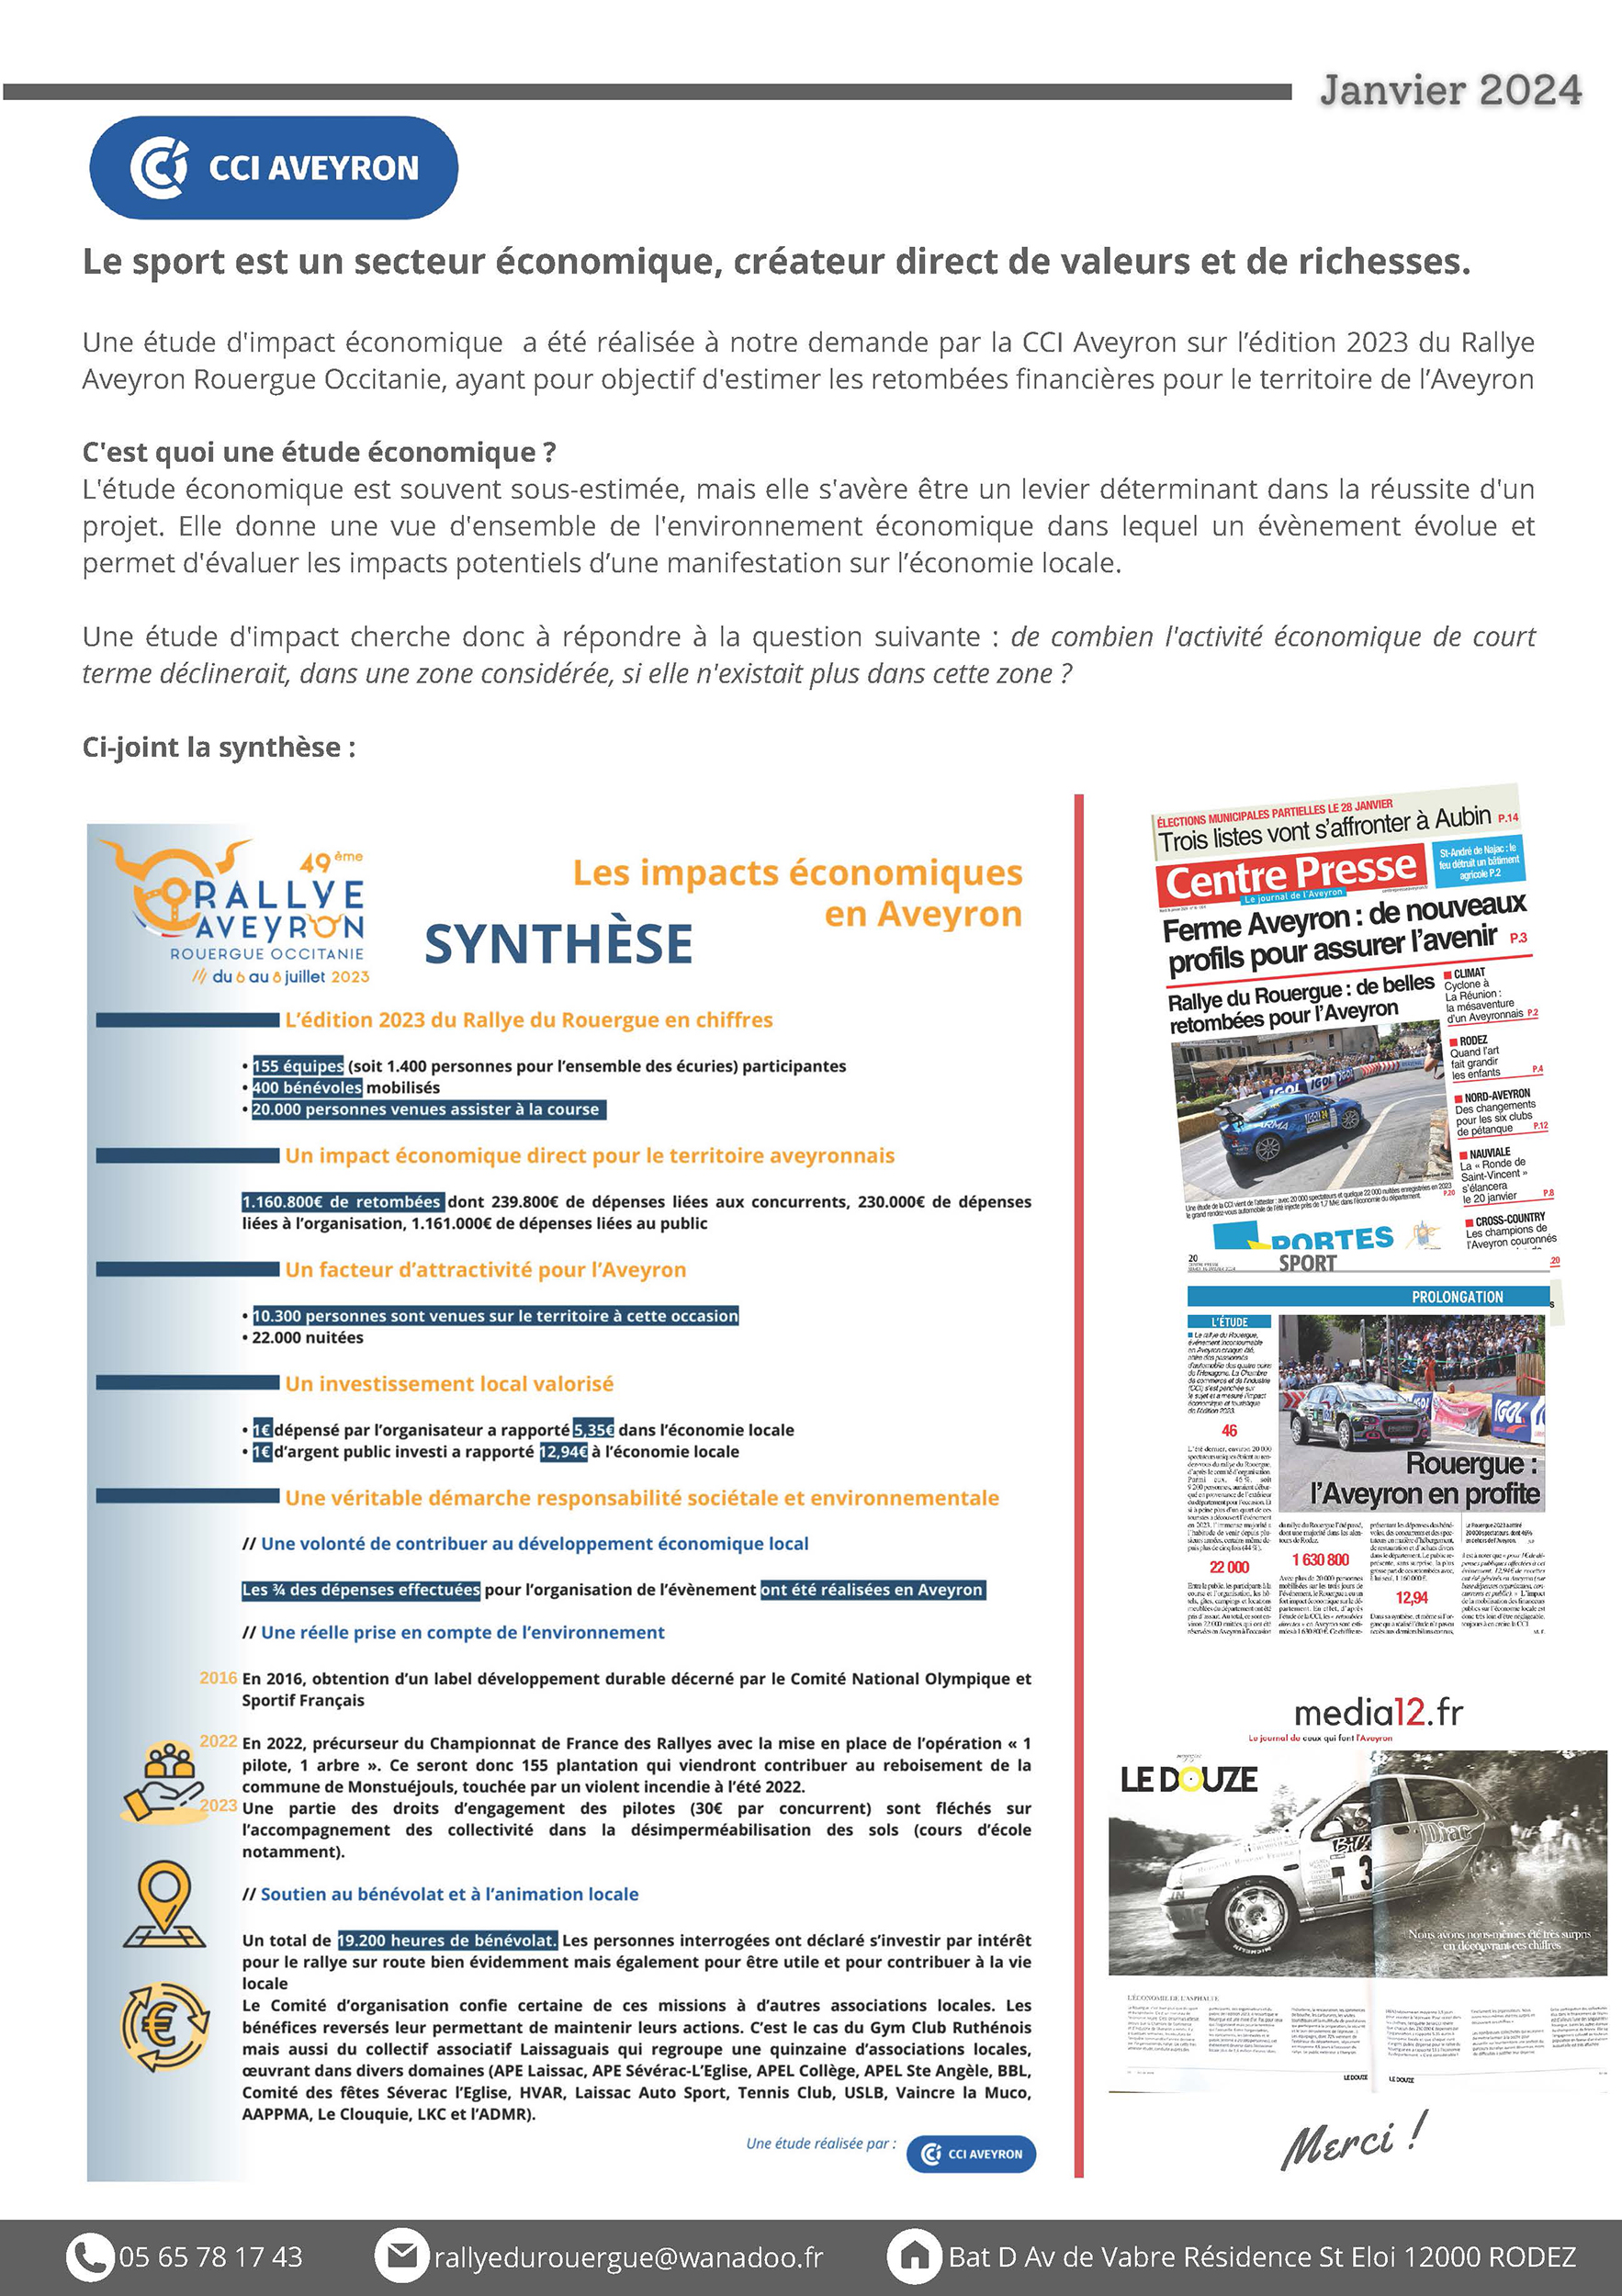 Newsletter_janvier_24_Page_3.jpg